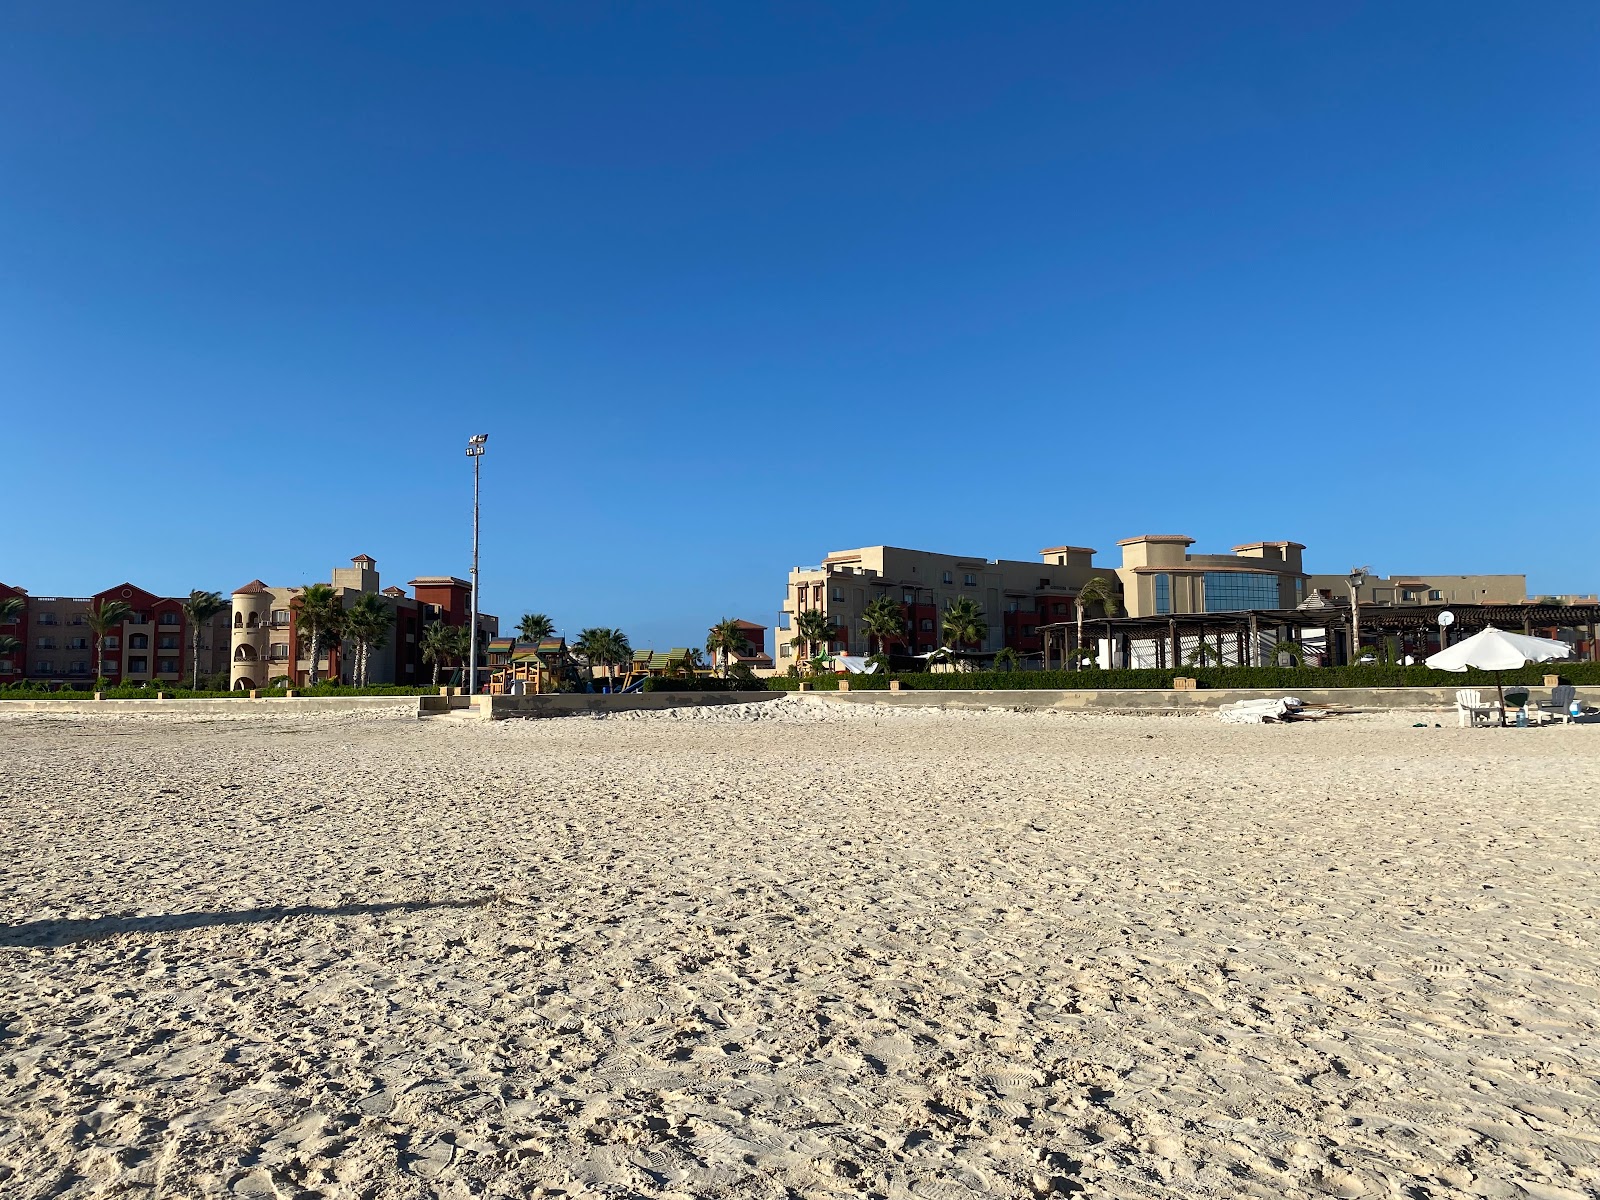 Zdjęcie Eagles Resort in Cleopatra Beach - popularne miejsce wśród znawców relaksu